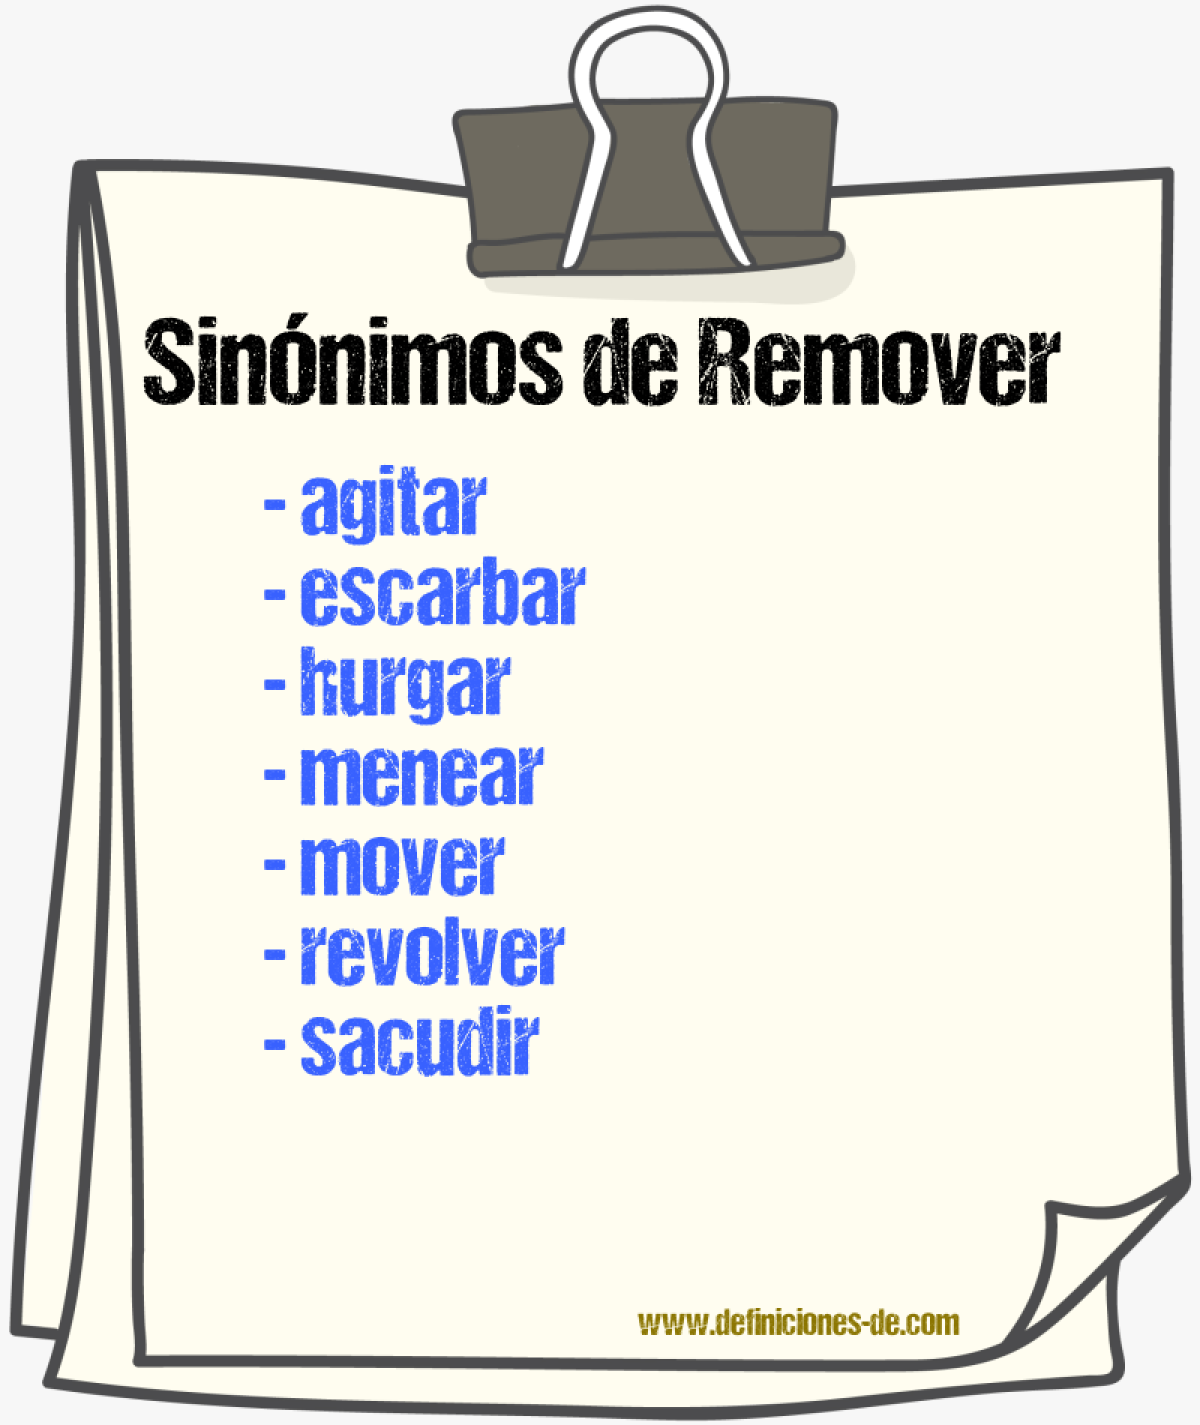 Sinónimos de remover